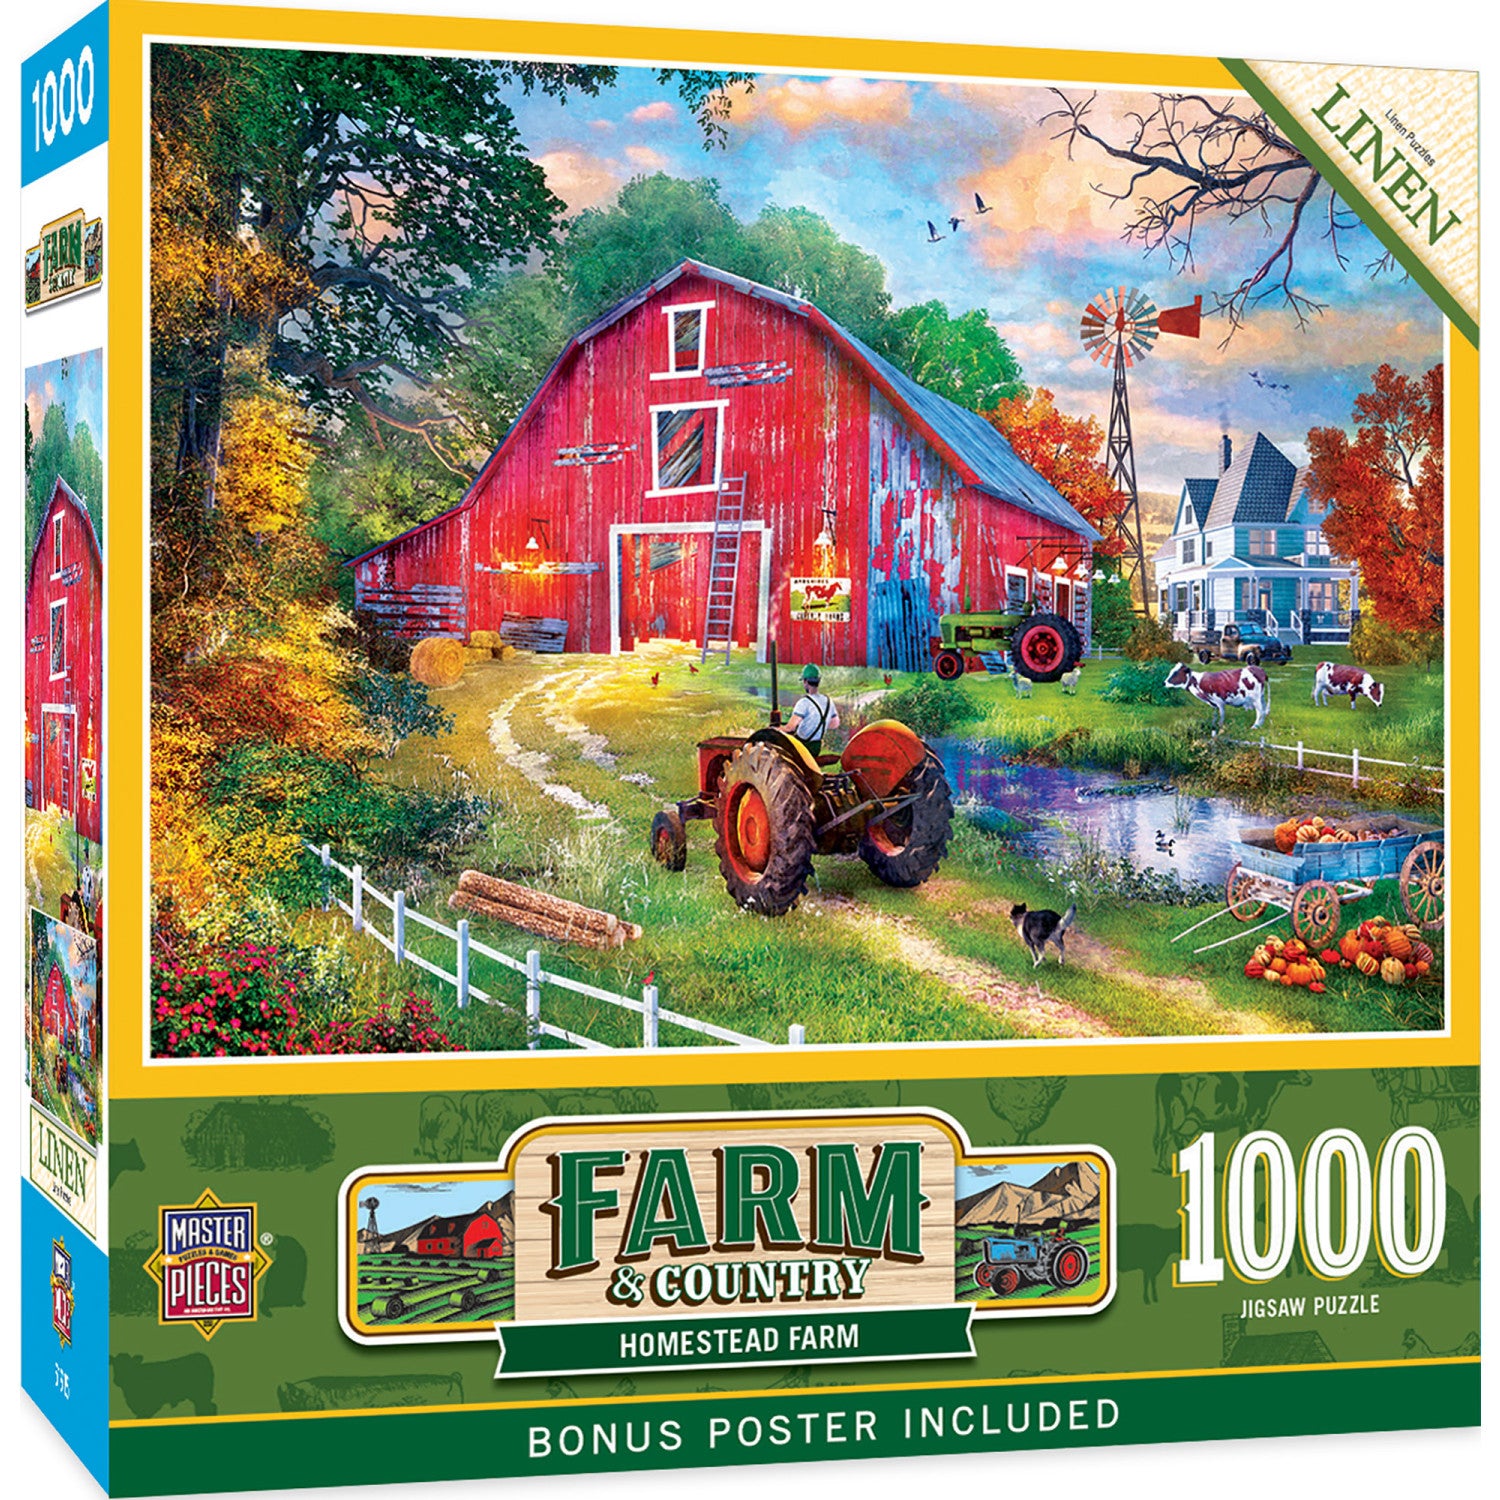 Puzzle The Farmhouse, 3 000 pieces